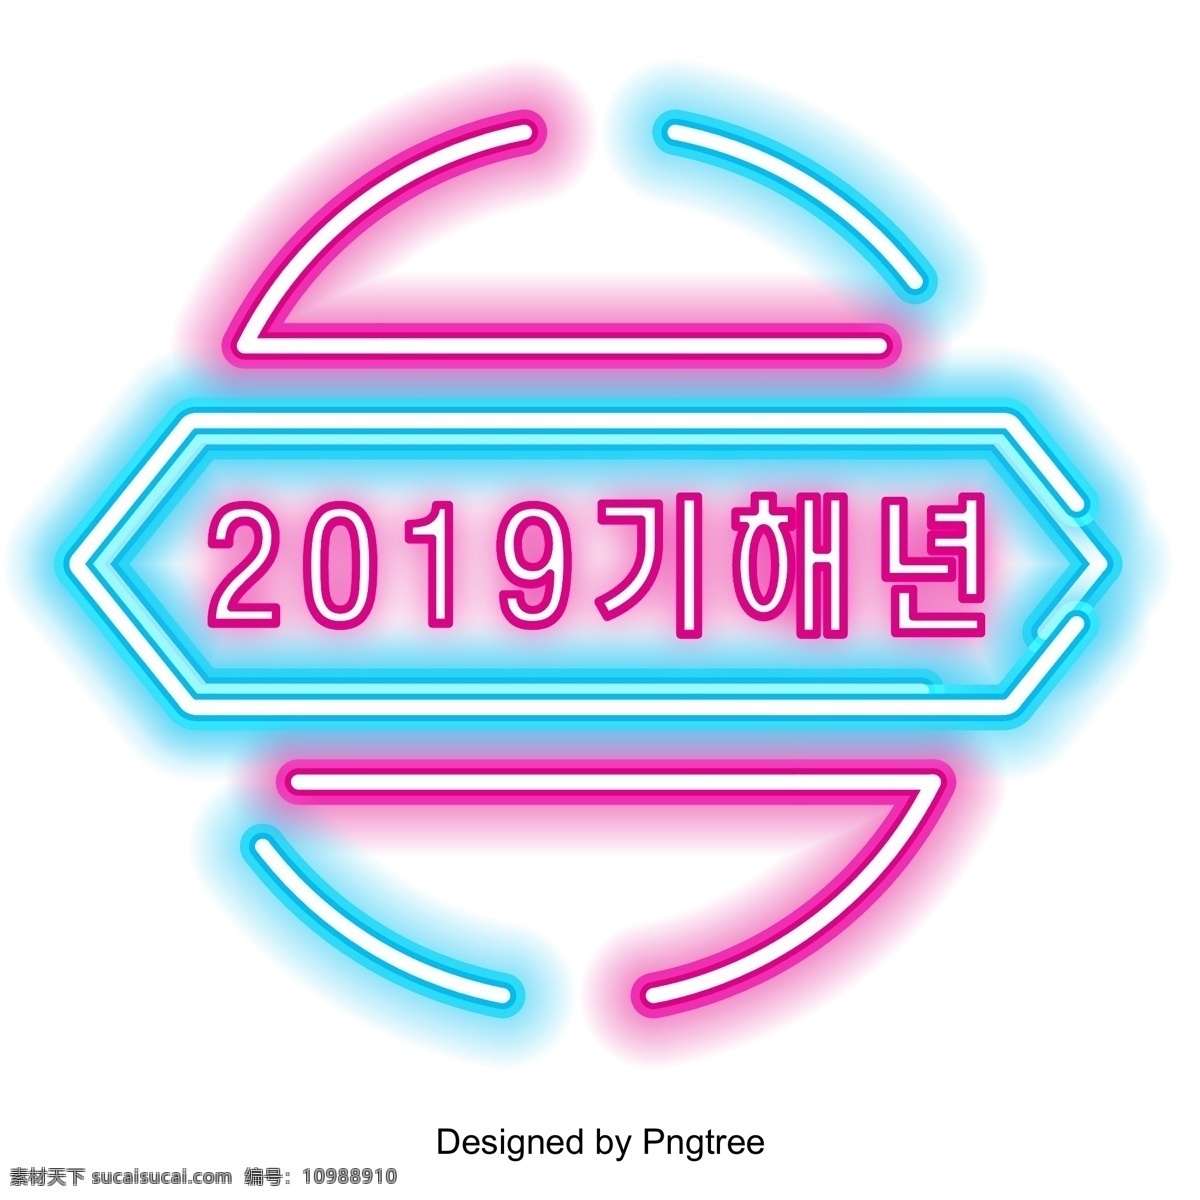 韩国 红 2019 年 晚 时候 影响 现场 再次 霓虹效果 韩文 节日活动 新年 事件 字体的活动